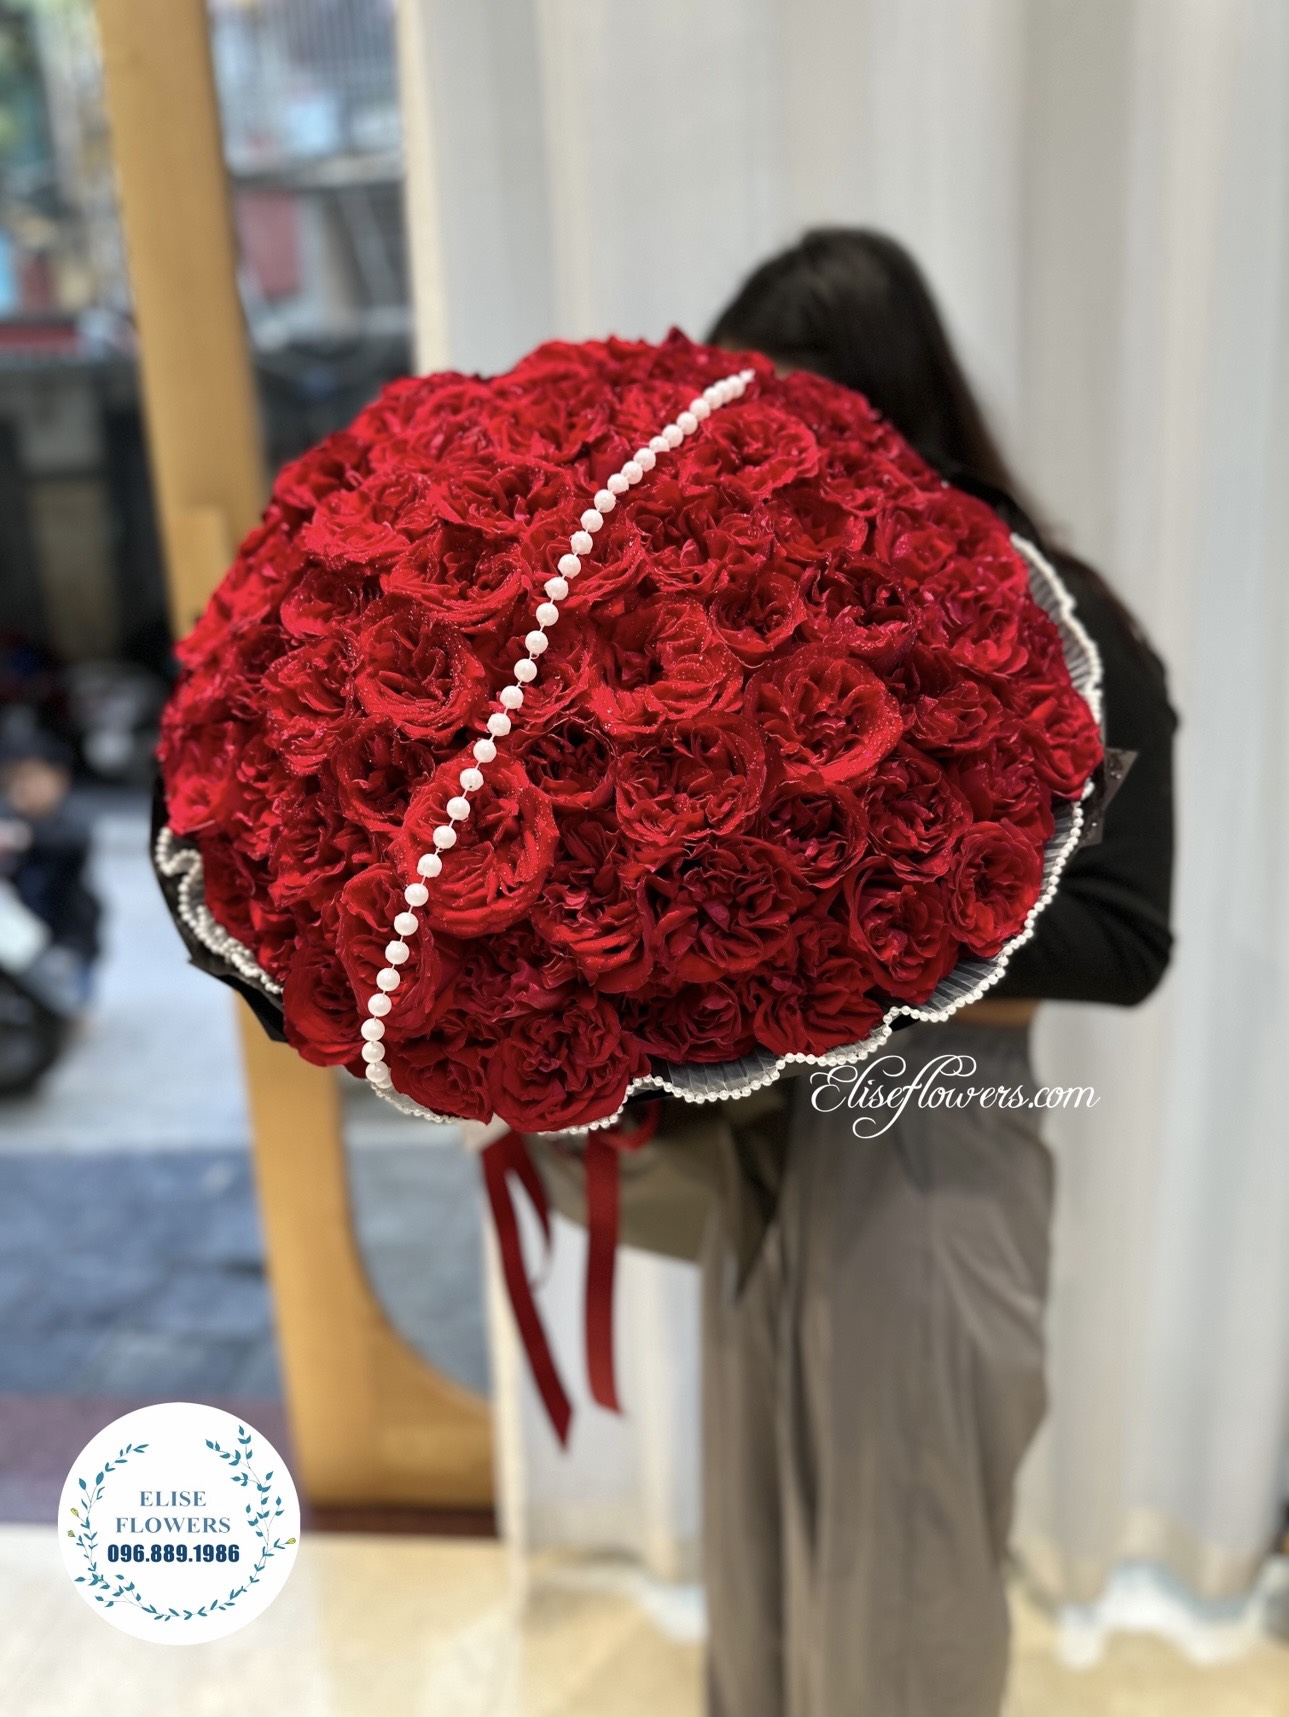 Bó hoa hồng đỏ nhập khẩu 100 bông đẹp nhất. Bó hoa hồng đỏ nhập khẩu 100 bông đẹp ở Hà Nội.